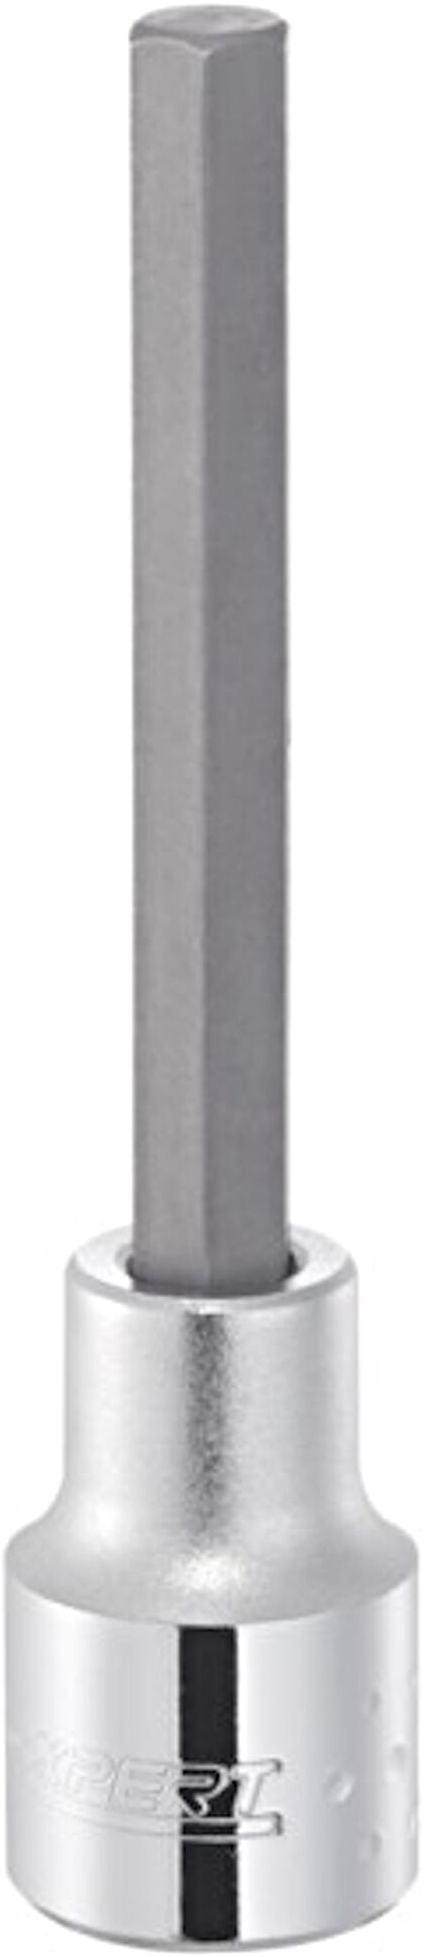 TONA EXPERT E031983 1/2" 6hranná zástrčná hlavice 14 mm - prodloužená